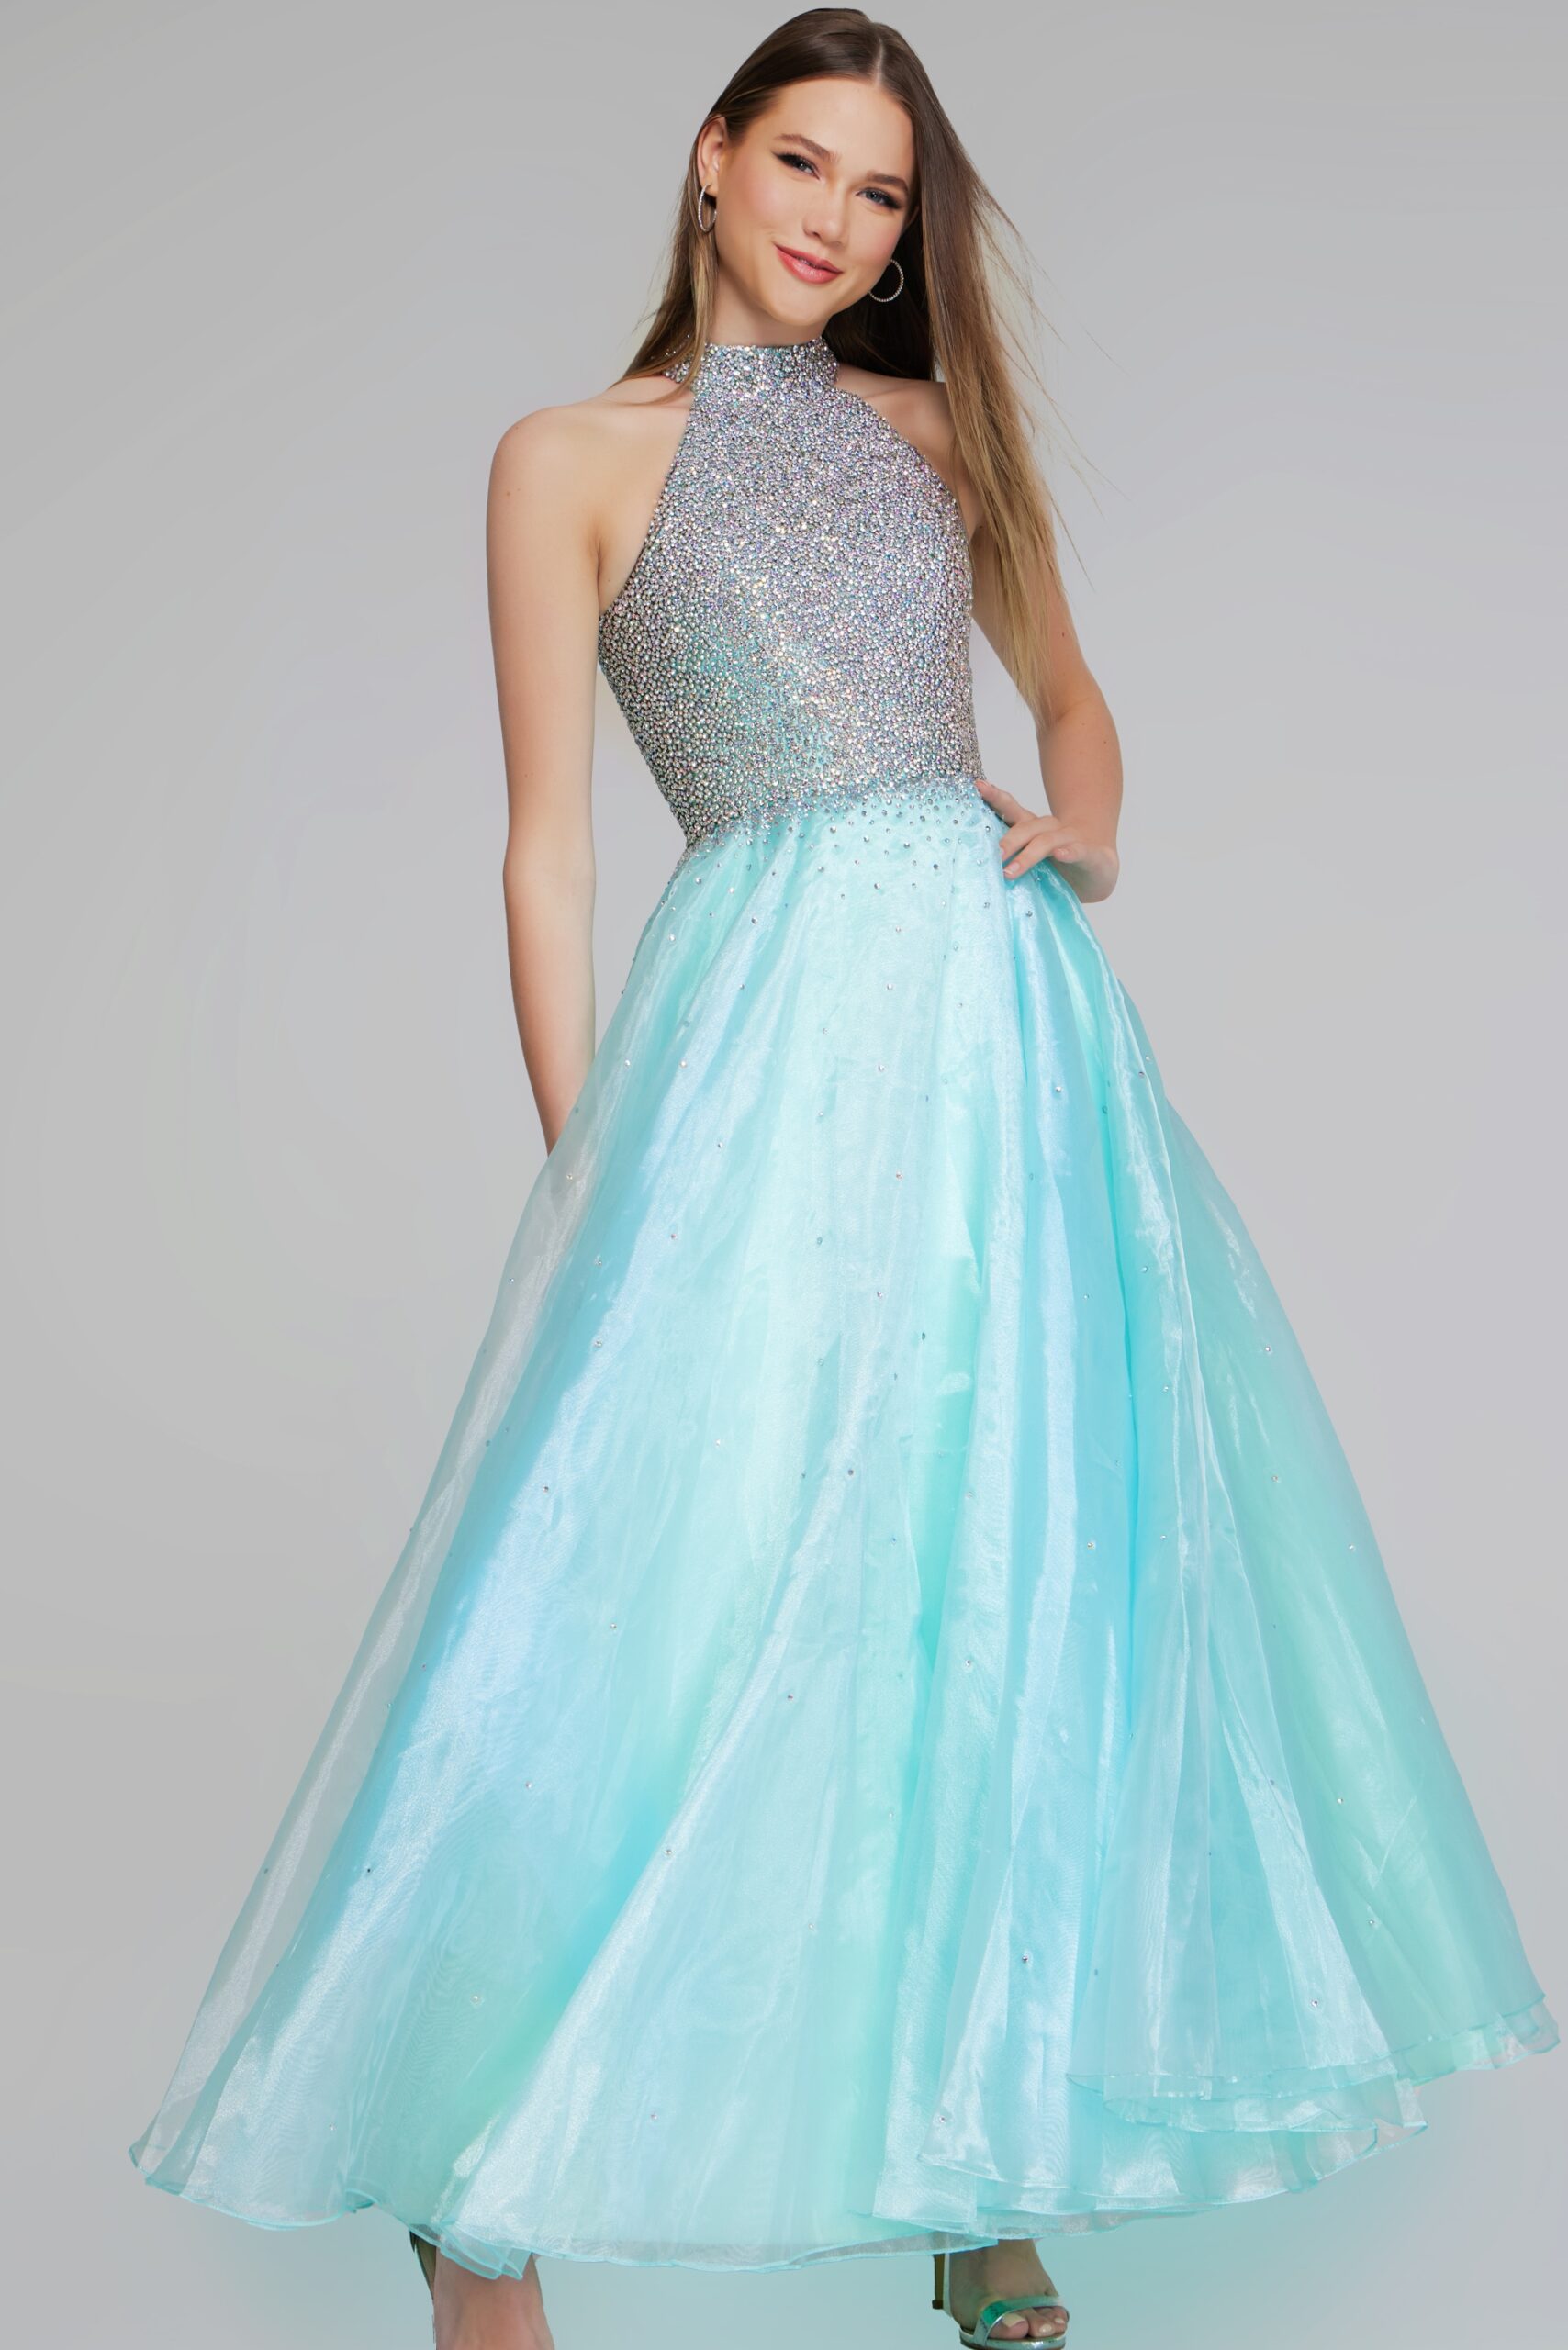 Model wearing Light Turquoise Beaded Halter Ball Gown K38262